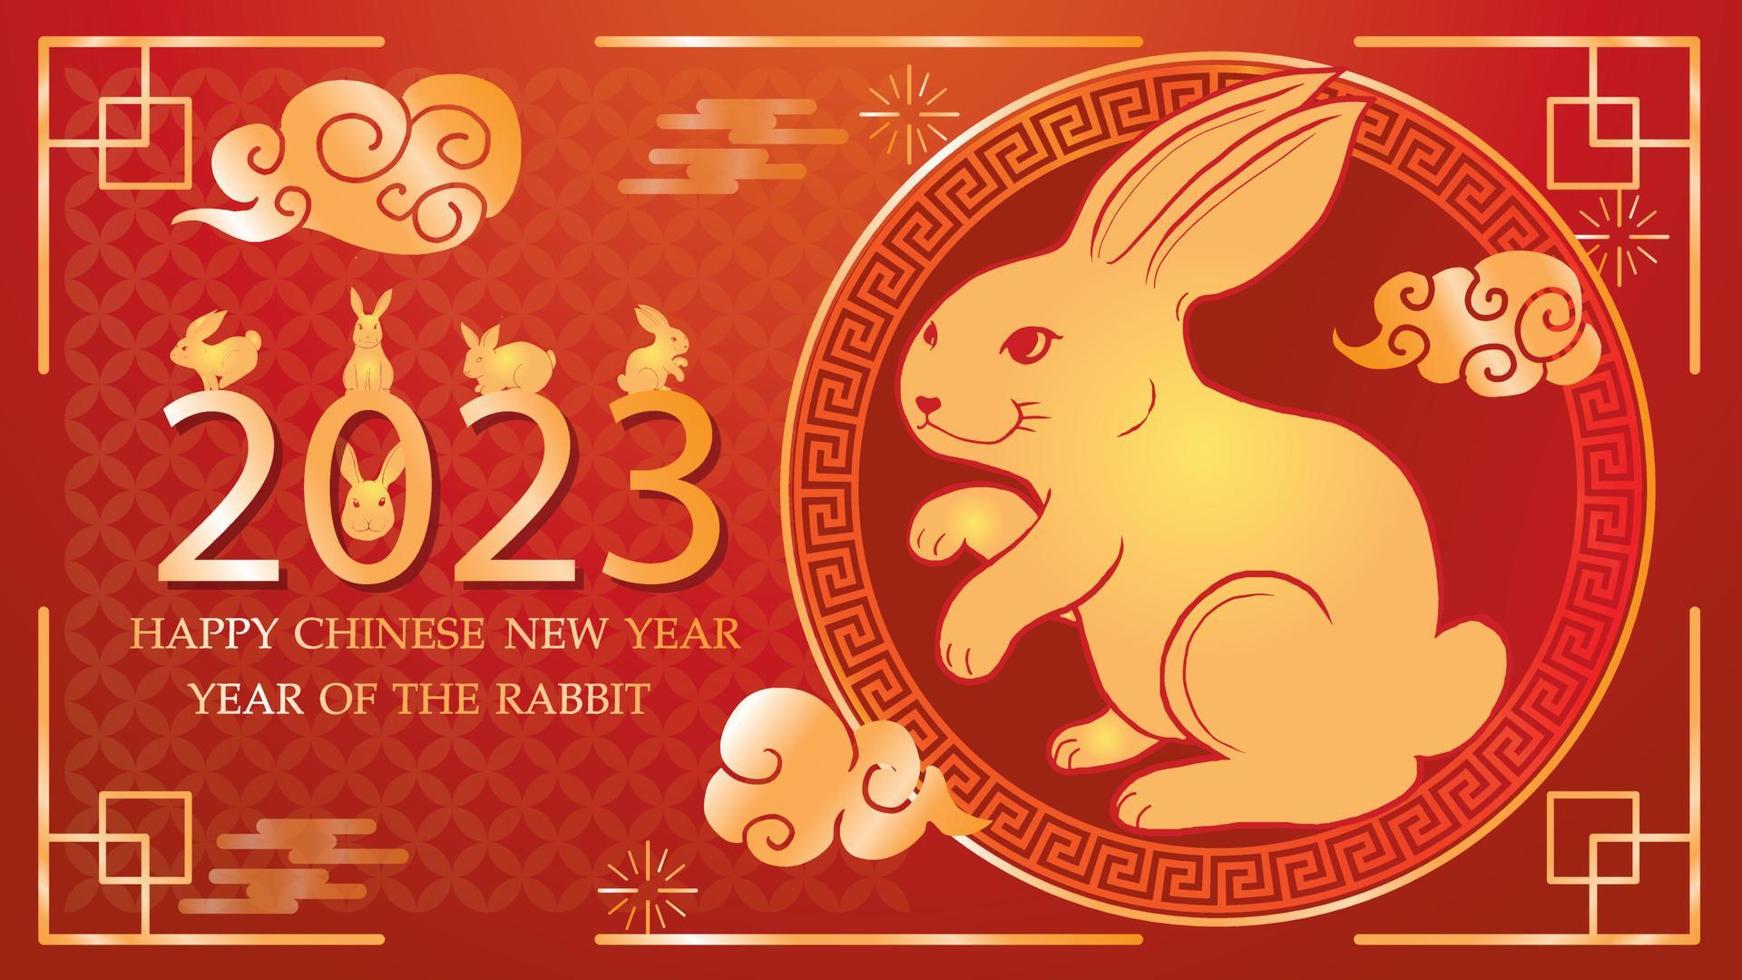 jaar van het gouden konijn 2023, chinees nieuwjaar vieringen oude chinese lantaarns, chinees sterrenbeeld concept, gouden konijn papier gesneden patroon vector